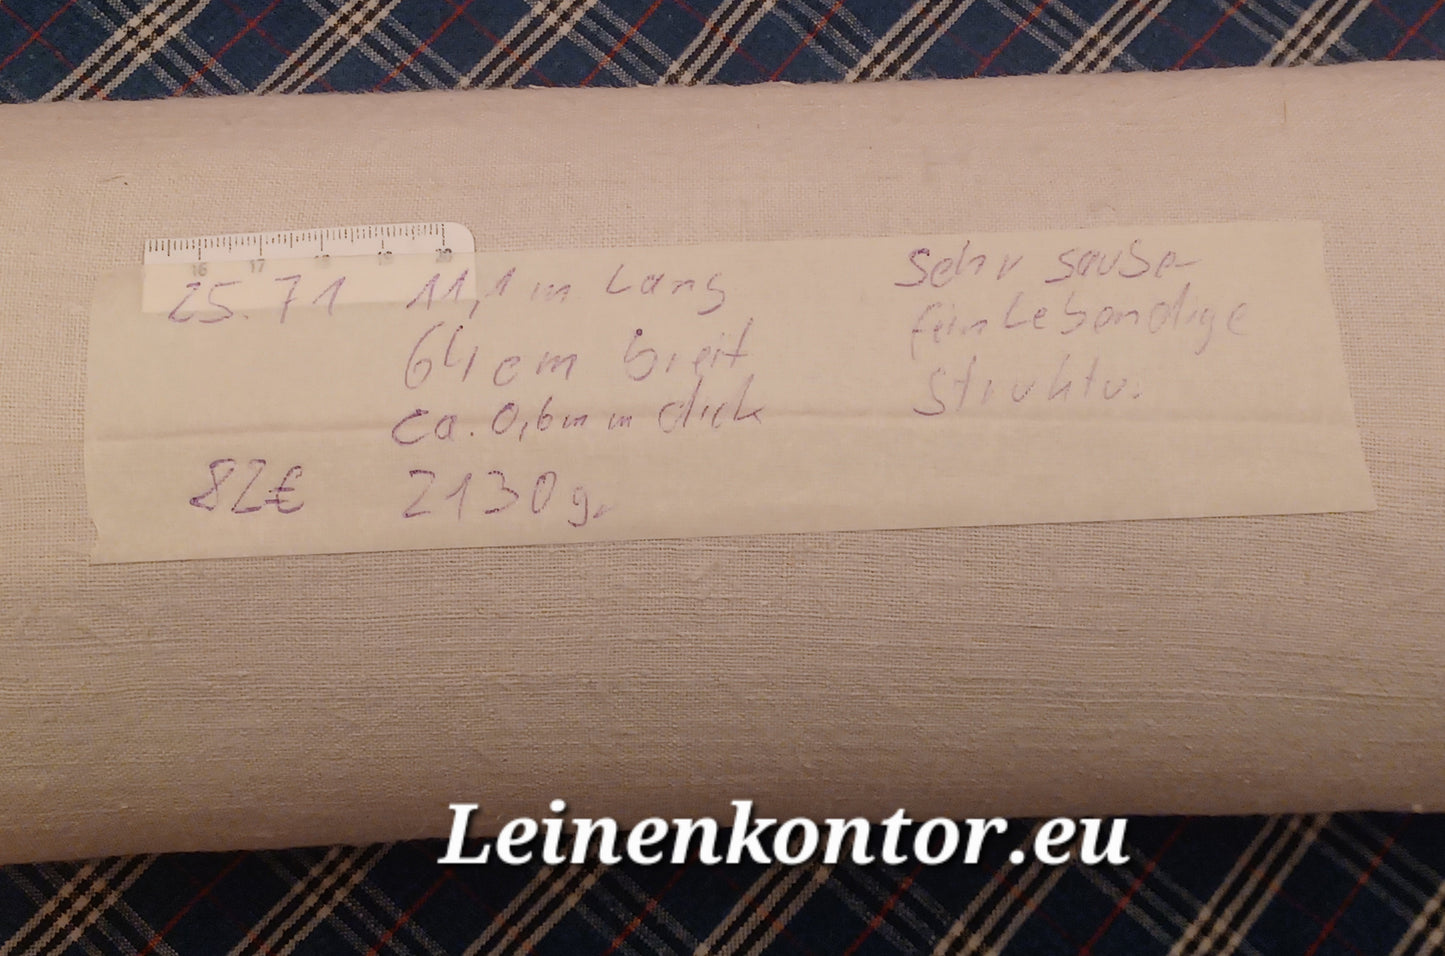 25.71 (11,1m x 0,64m x 0,6mm, 2130gr) Bauernleinen Leinen Landhaus Leinenstoff Leinenballen